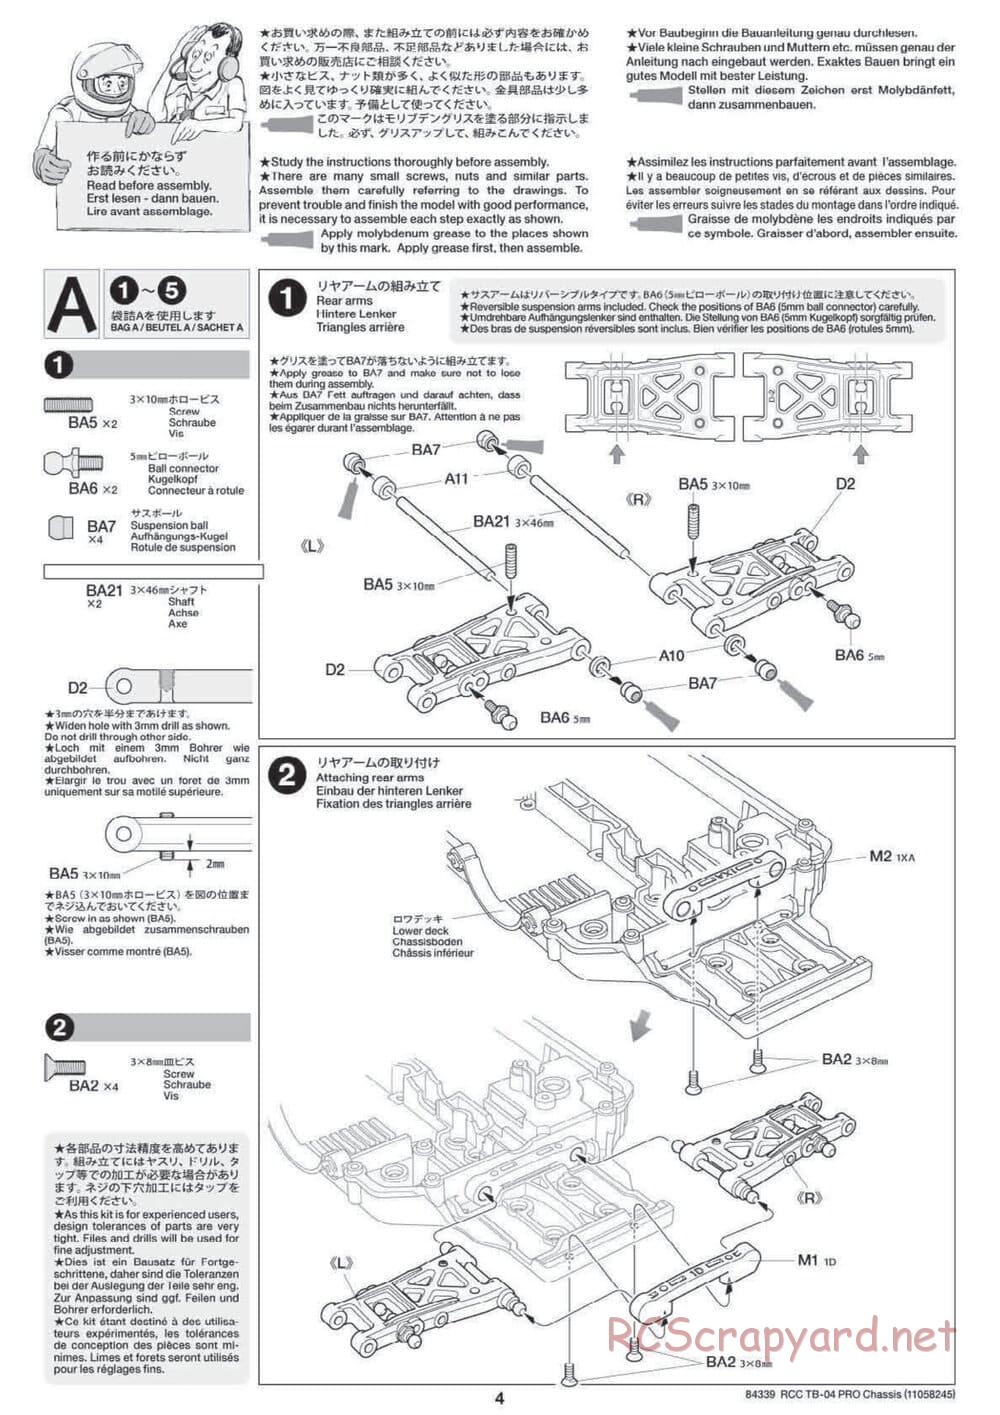 Tamiya - TB-04 Pro Chassis - Manual - Page 4